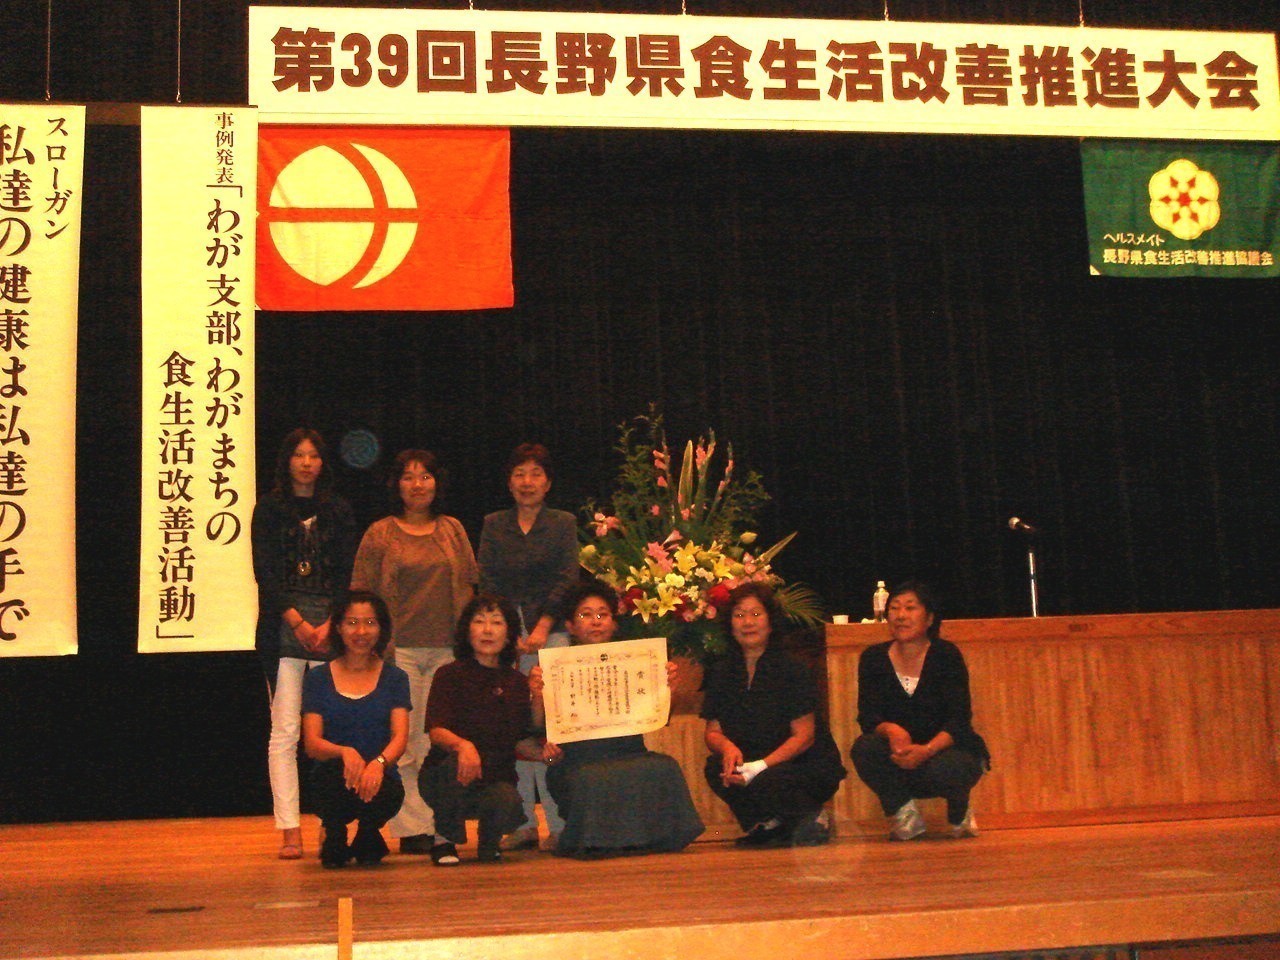 高山村食生活改善推進協議会の知事表彰受賞時の集合写真